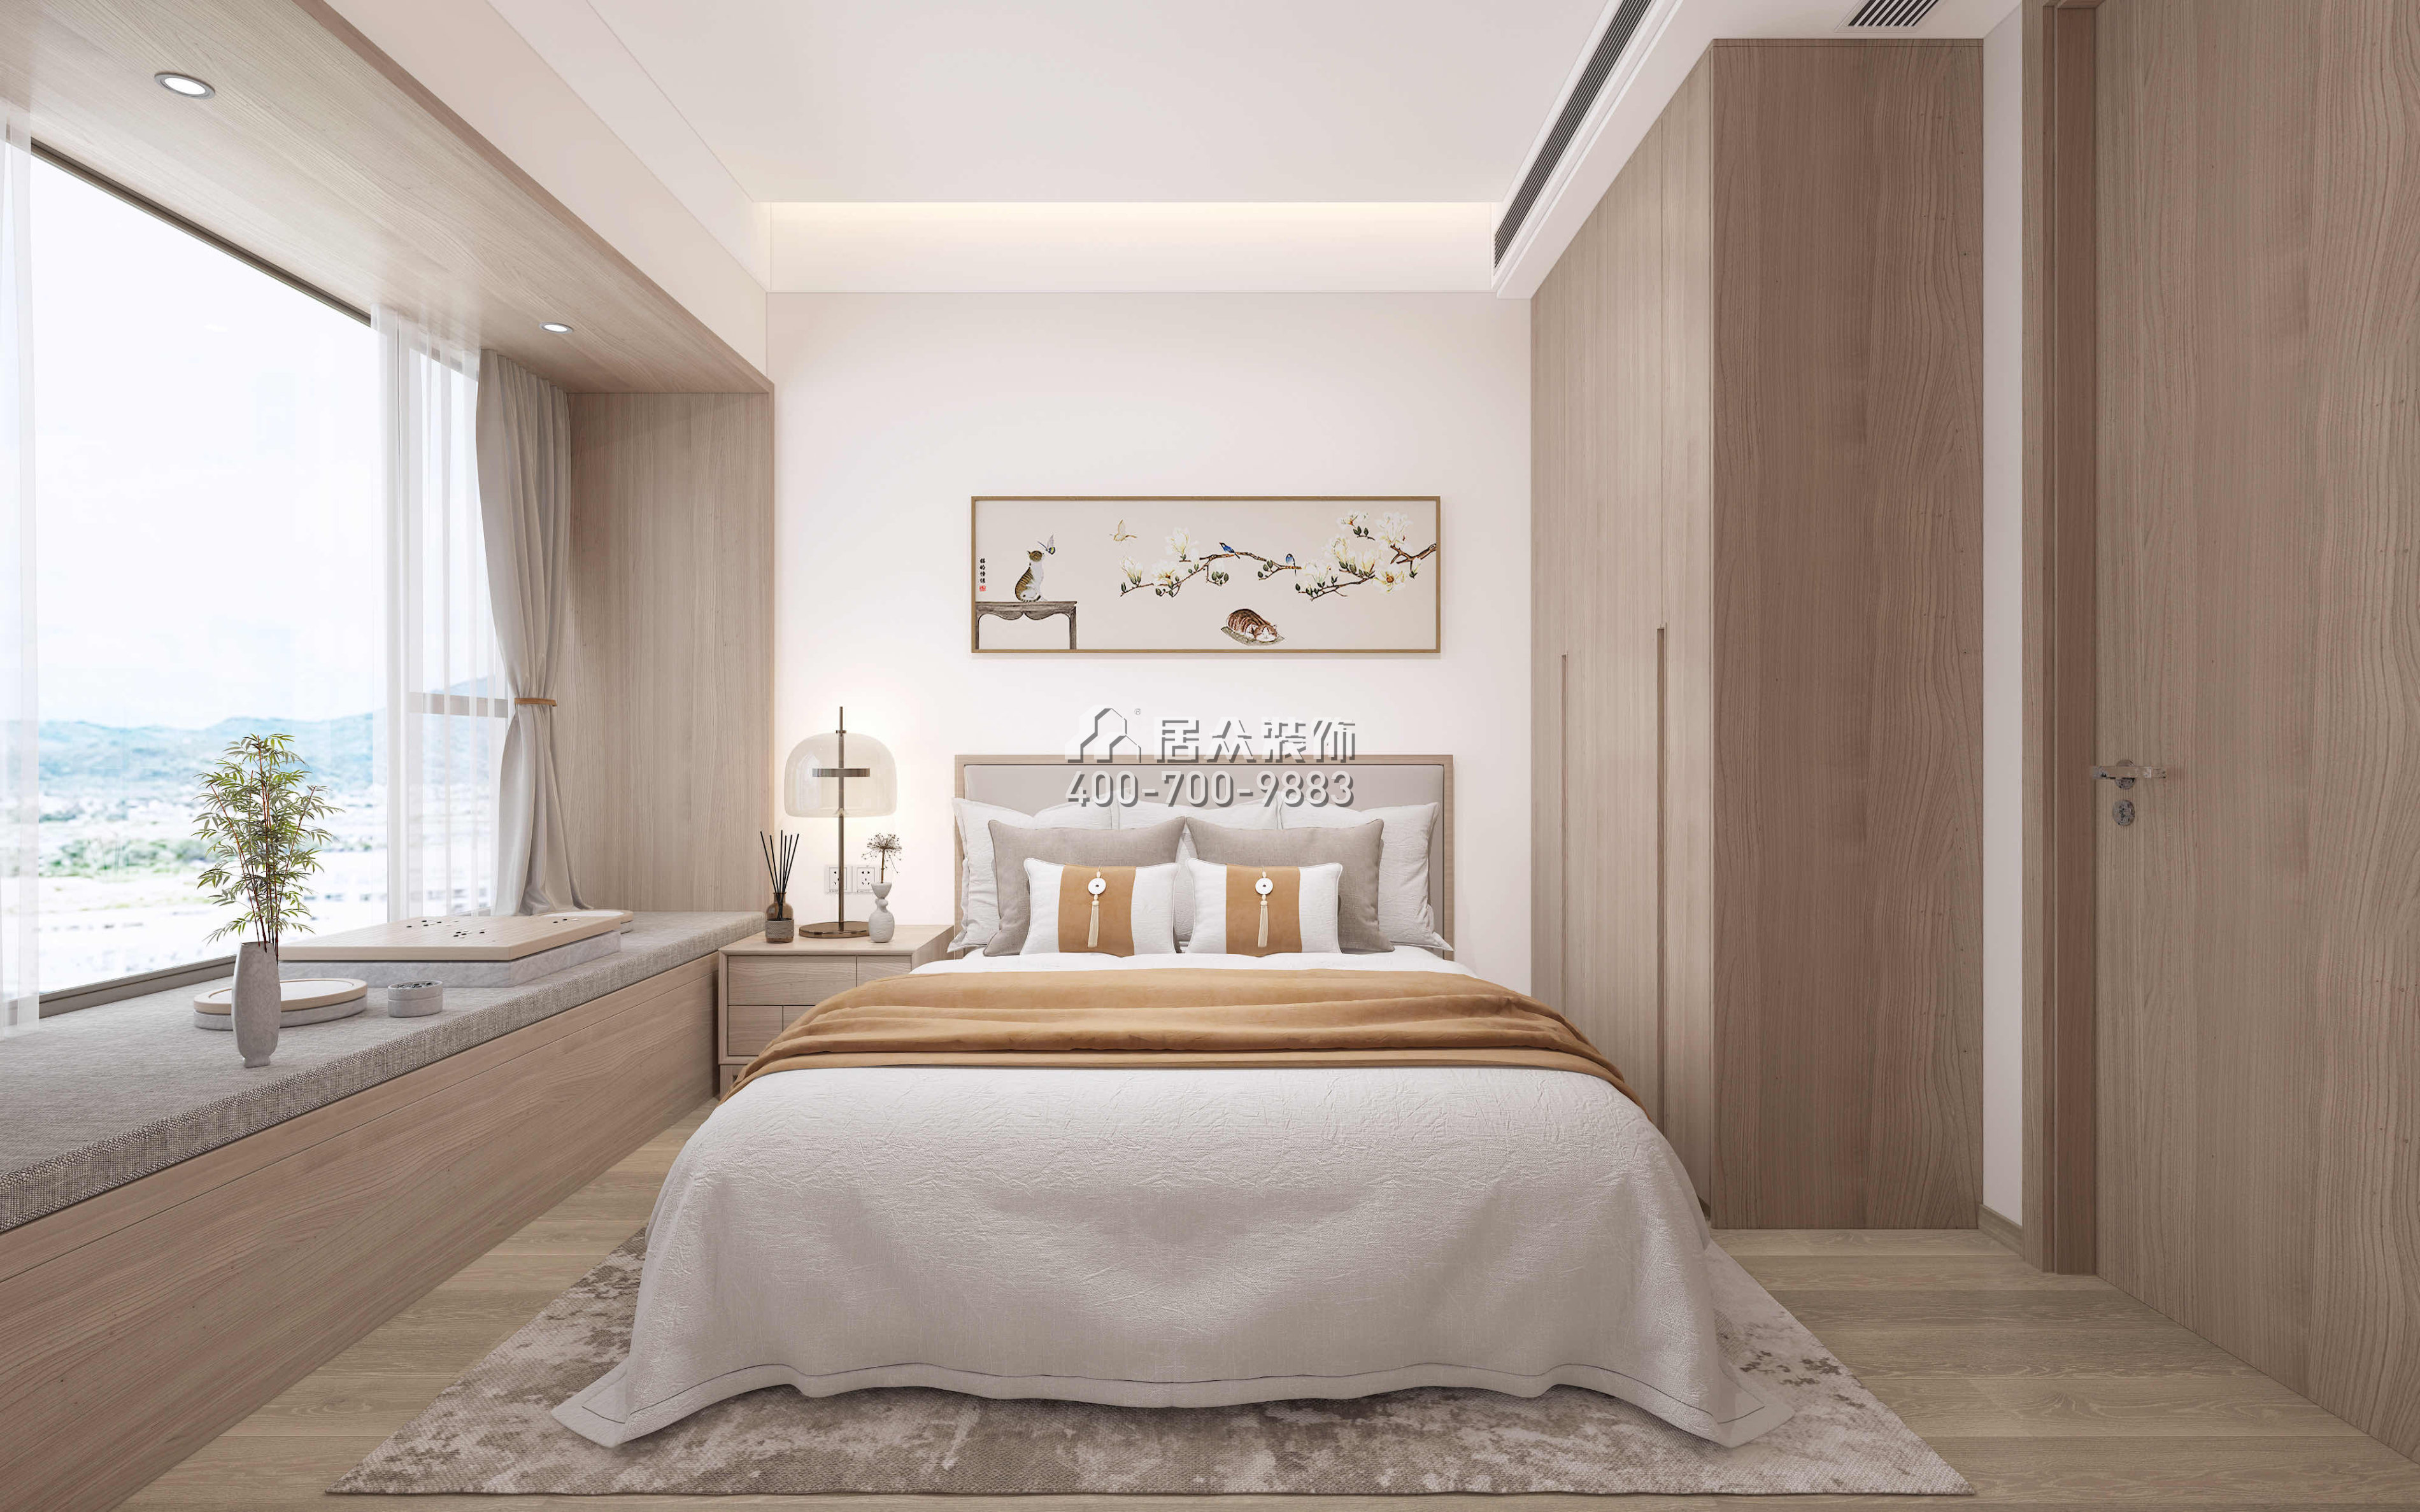 星河明居115平方米現代簡約風格平層戶型臥室裝修效果圖